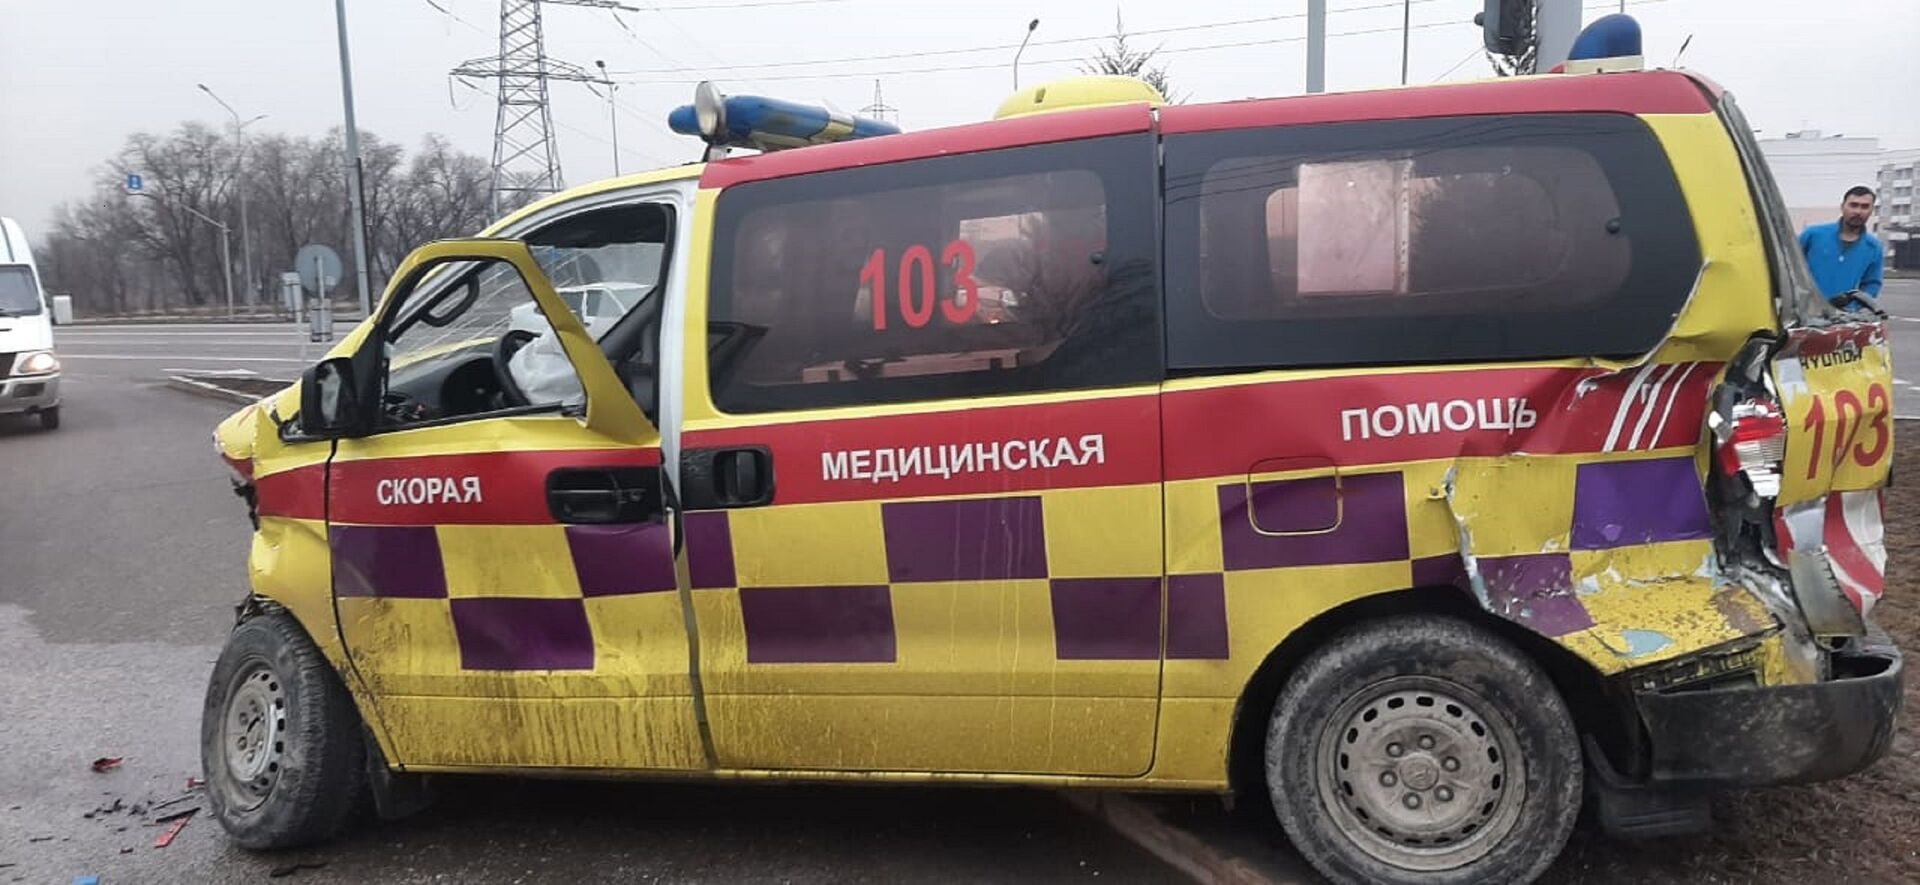 Крупное ДТП с участием скорой произошло в Алматы: пострадали 6 человек - фото - Sputnik Казахстан, 1920, 03.03.2021